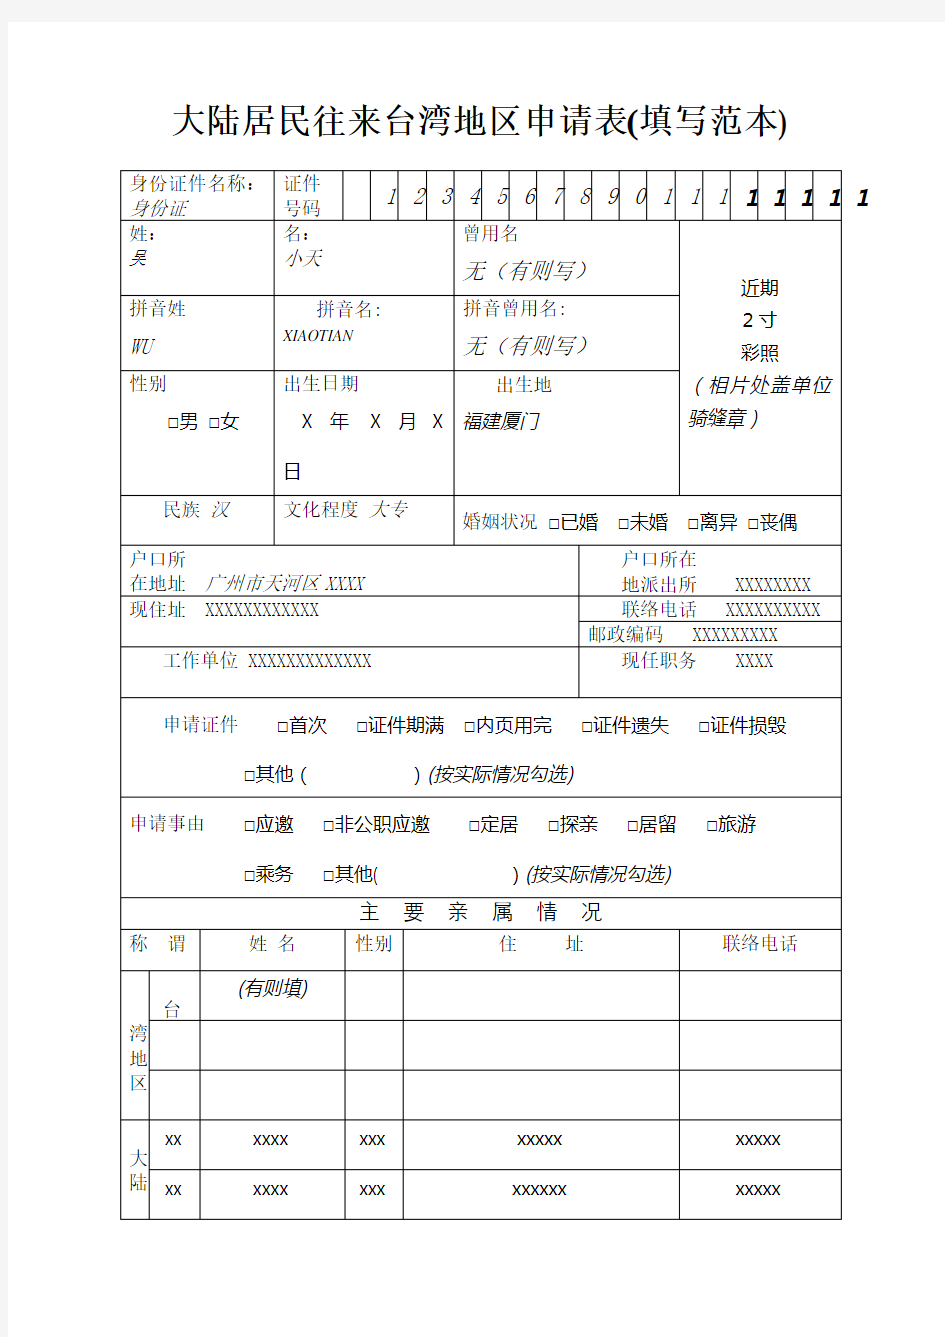 大陆居民往来台湾地区申请表(填写范本)